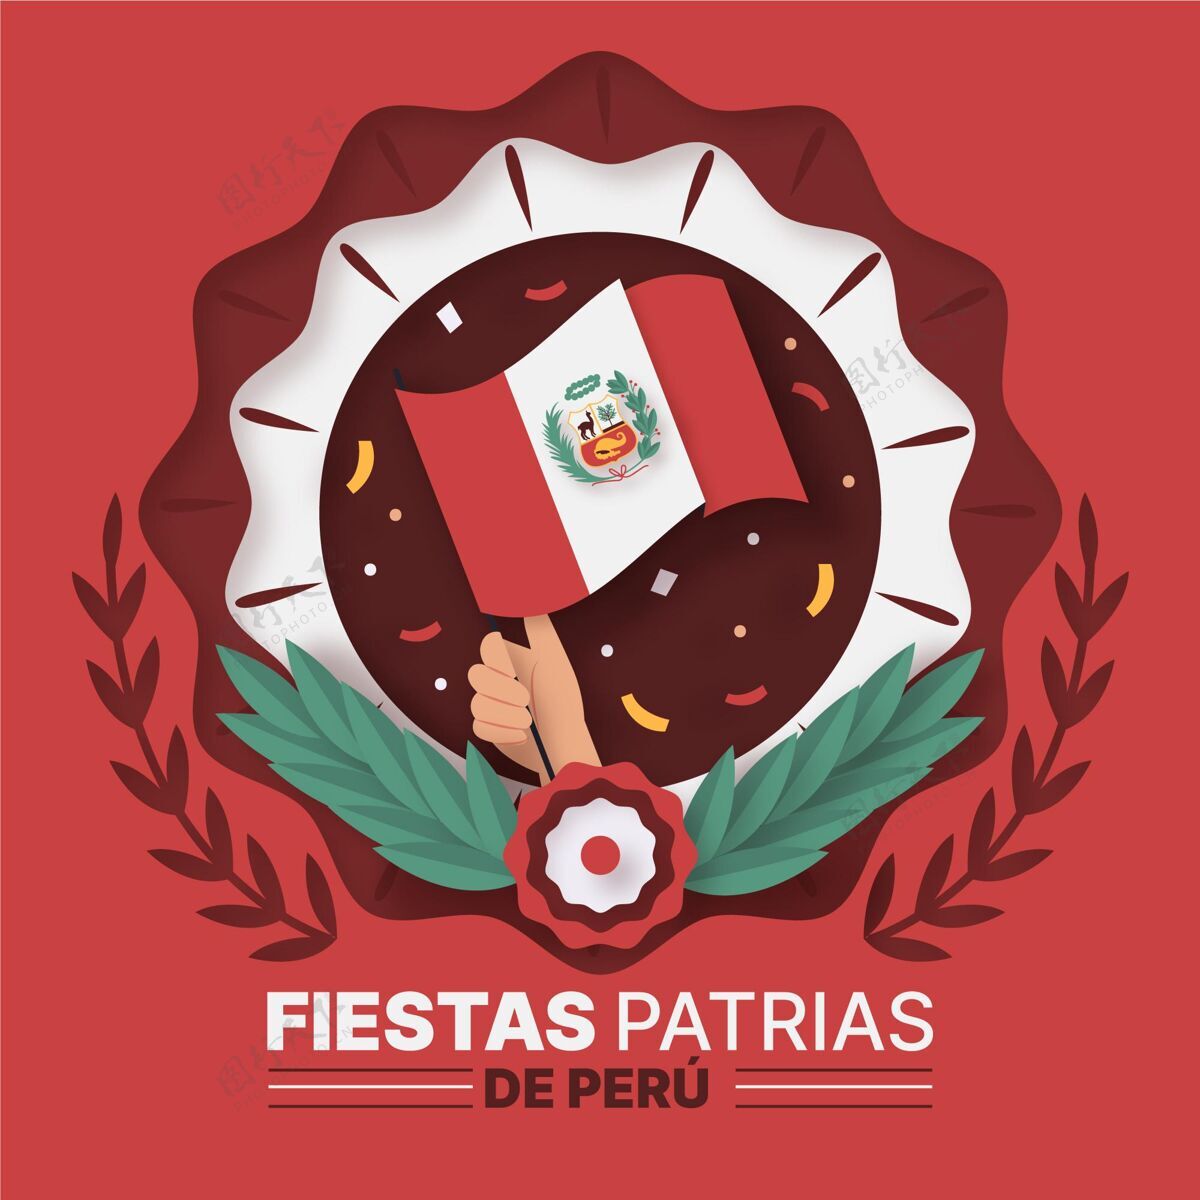 纸张风格秘鲁国庆节纸制插图纪念7月28日秘鲁